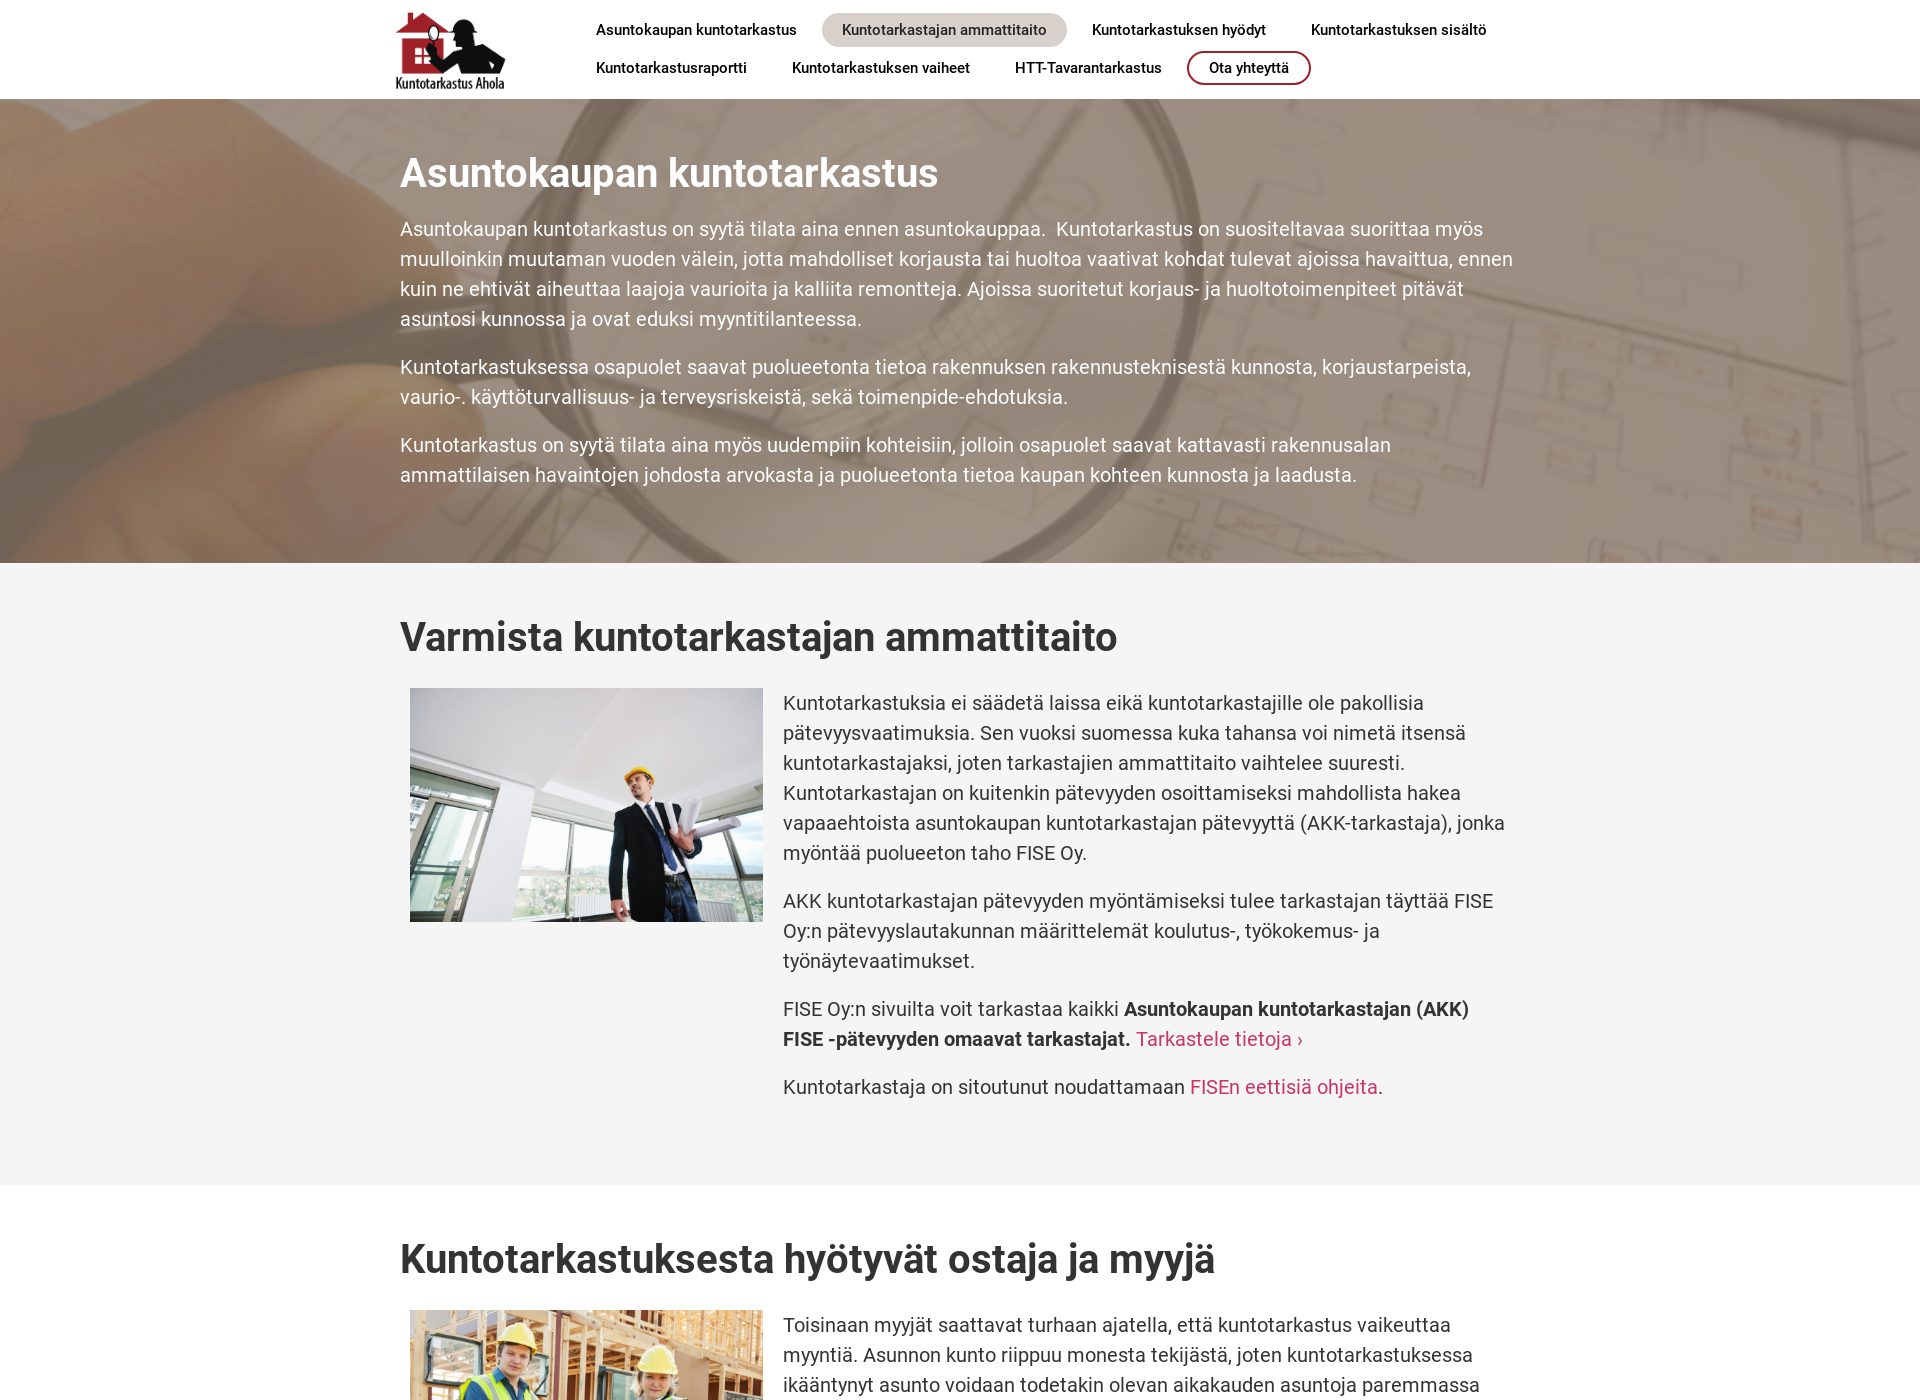 Skärmdump för kuntotarkastusahola.fi